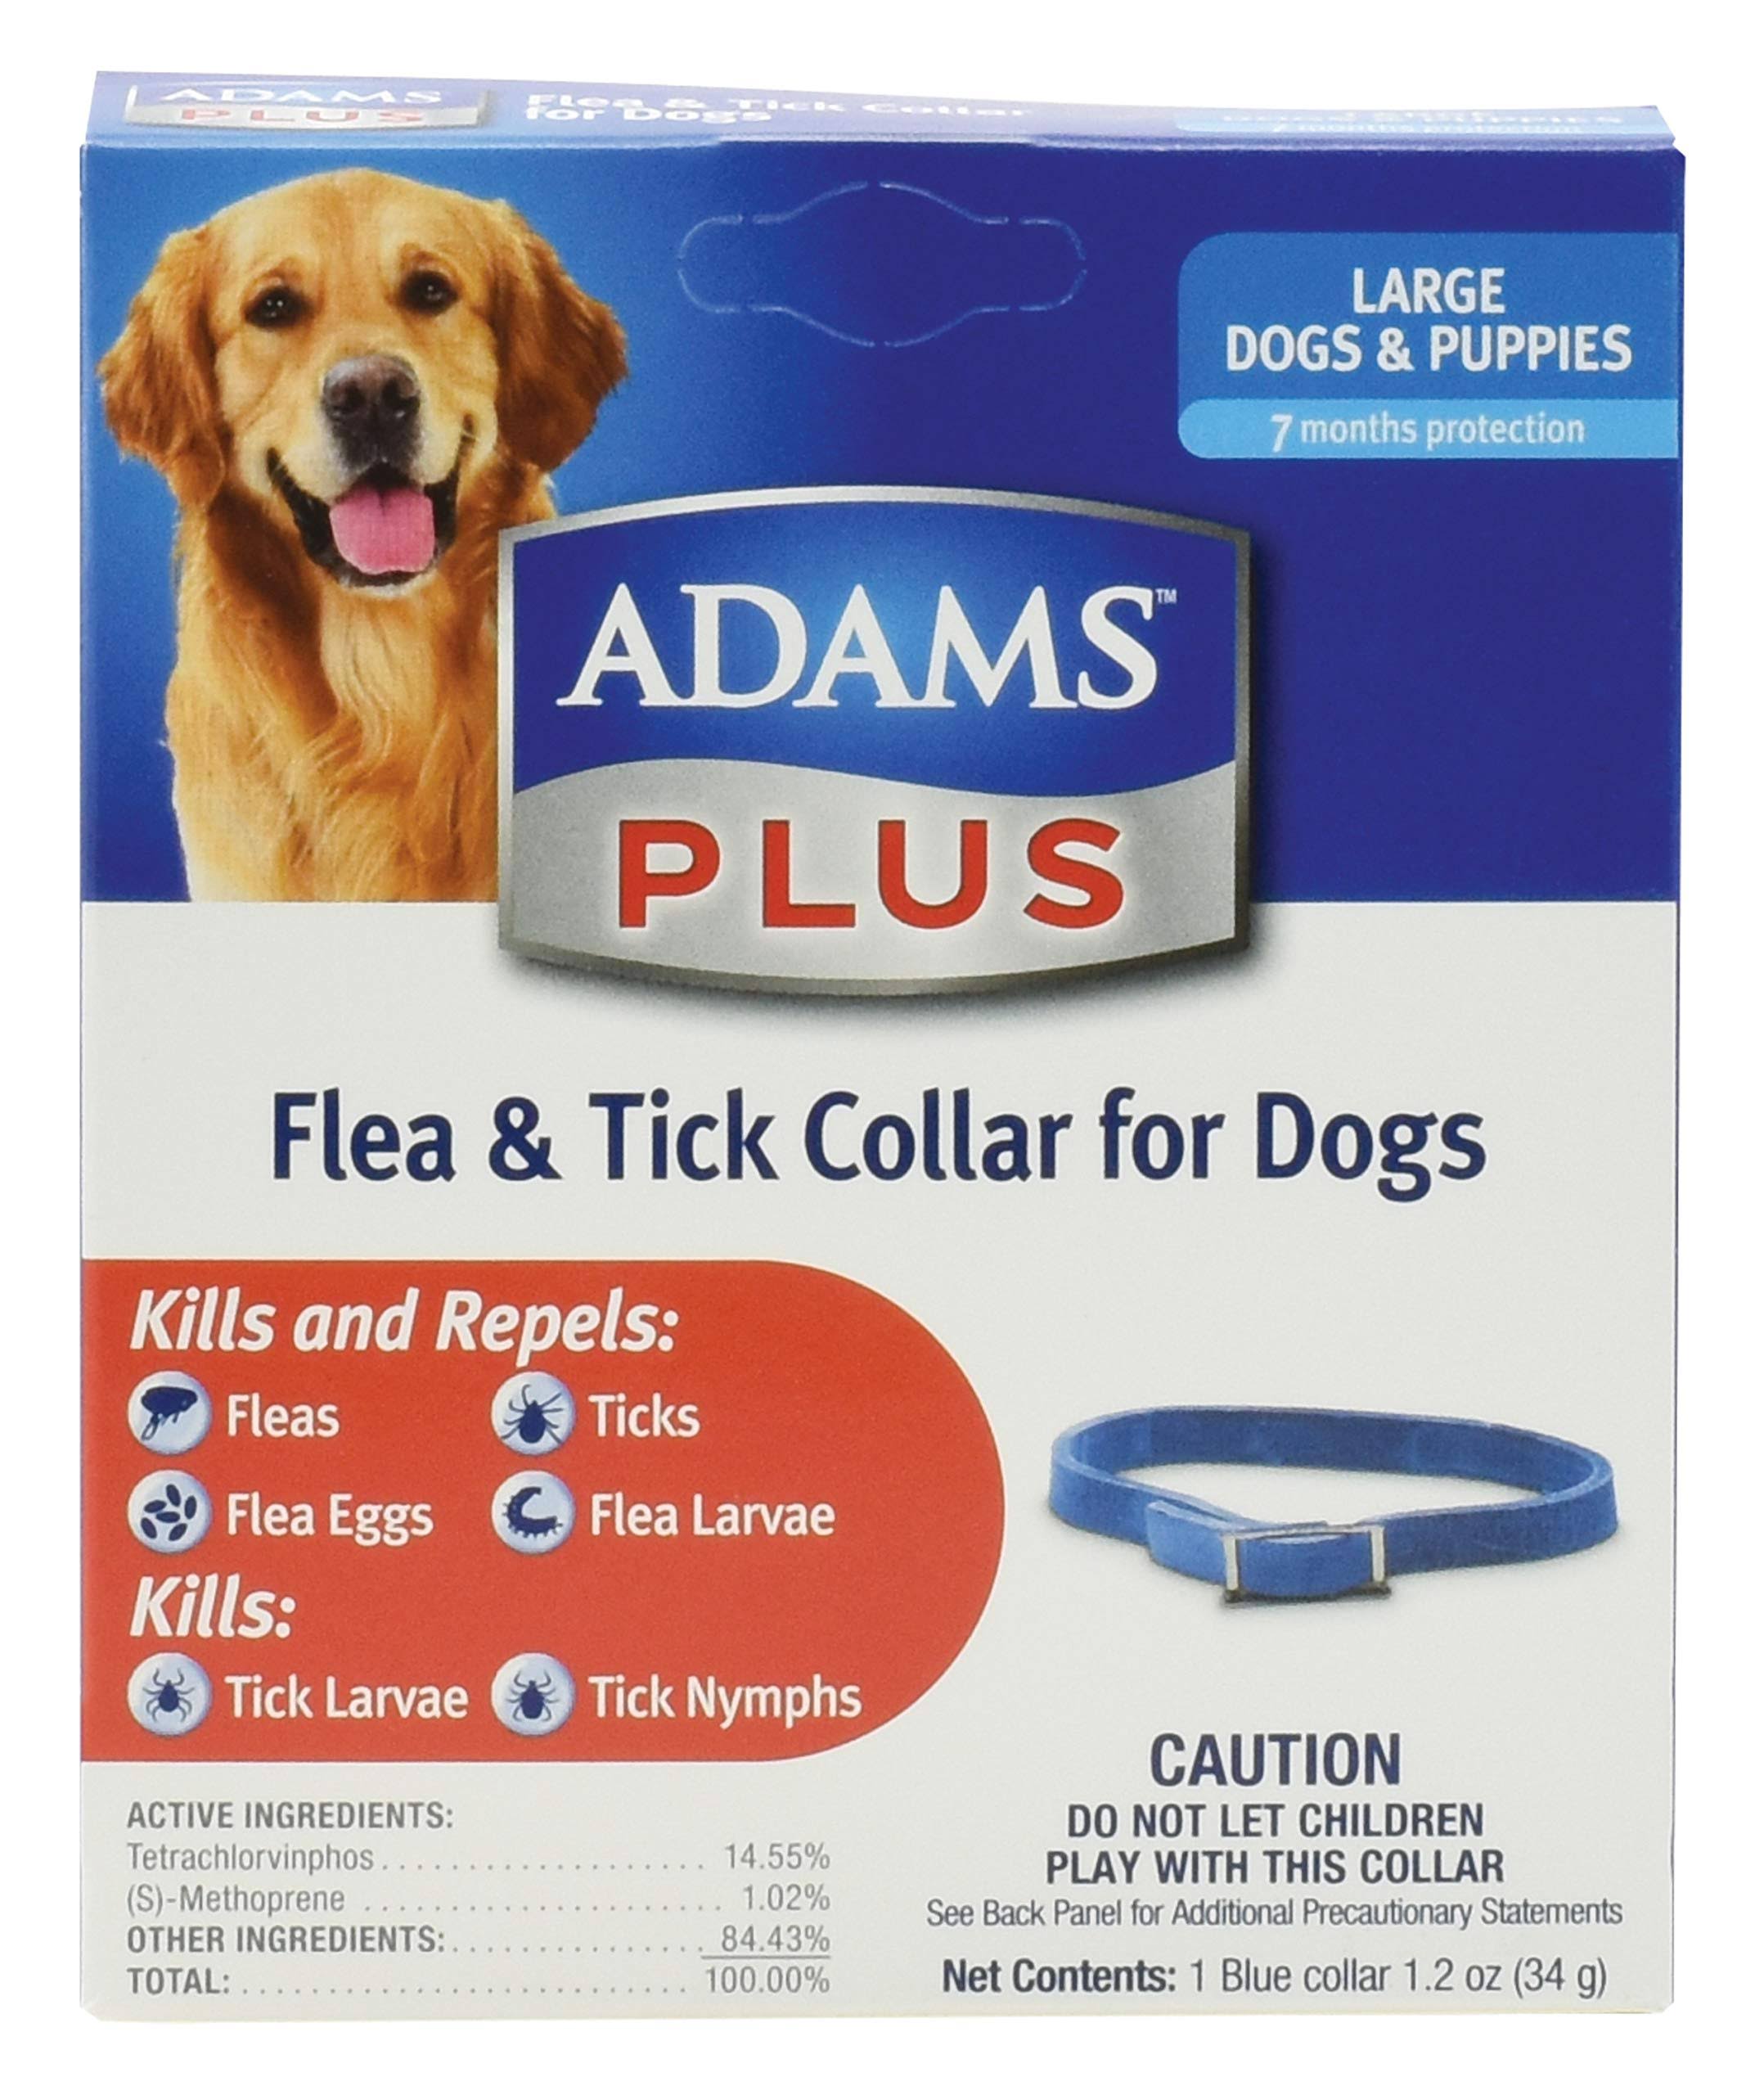 Adams Plus Flea & Tick Collar For Dogs - Large